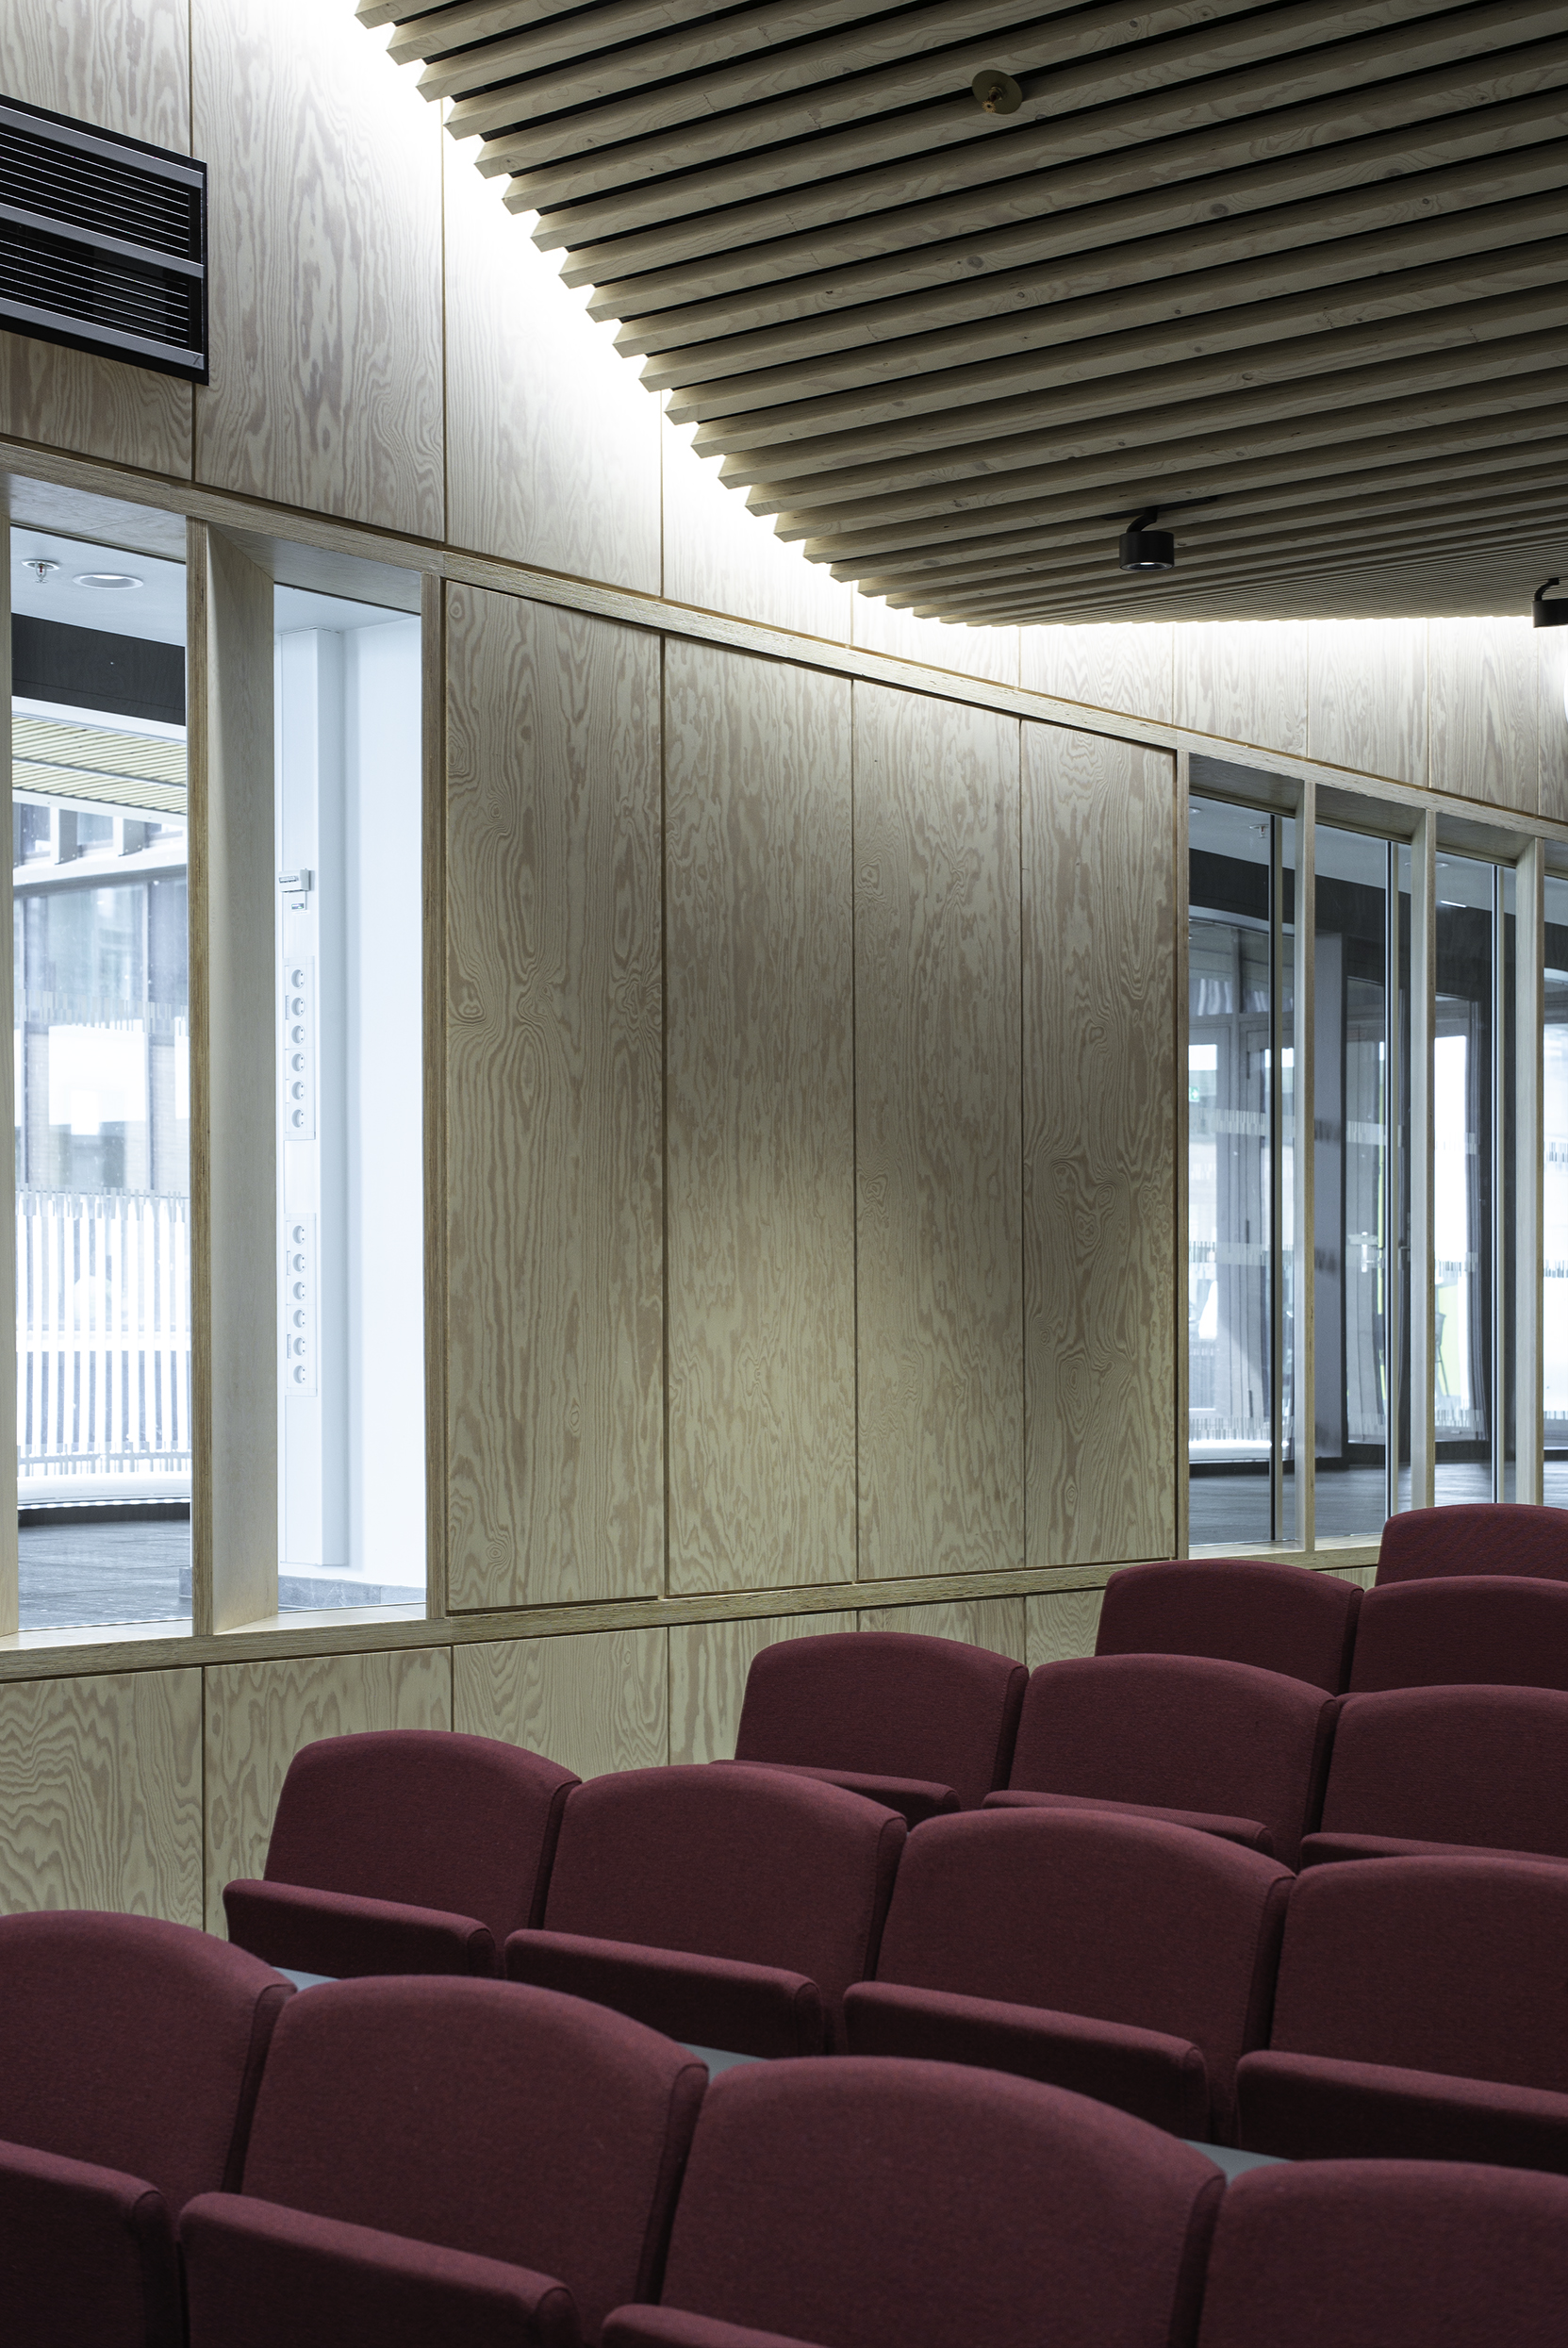 Foredragssal med glatte træpaneler på vægge med flere vinduer og vinrøde stole